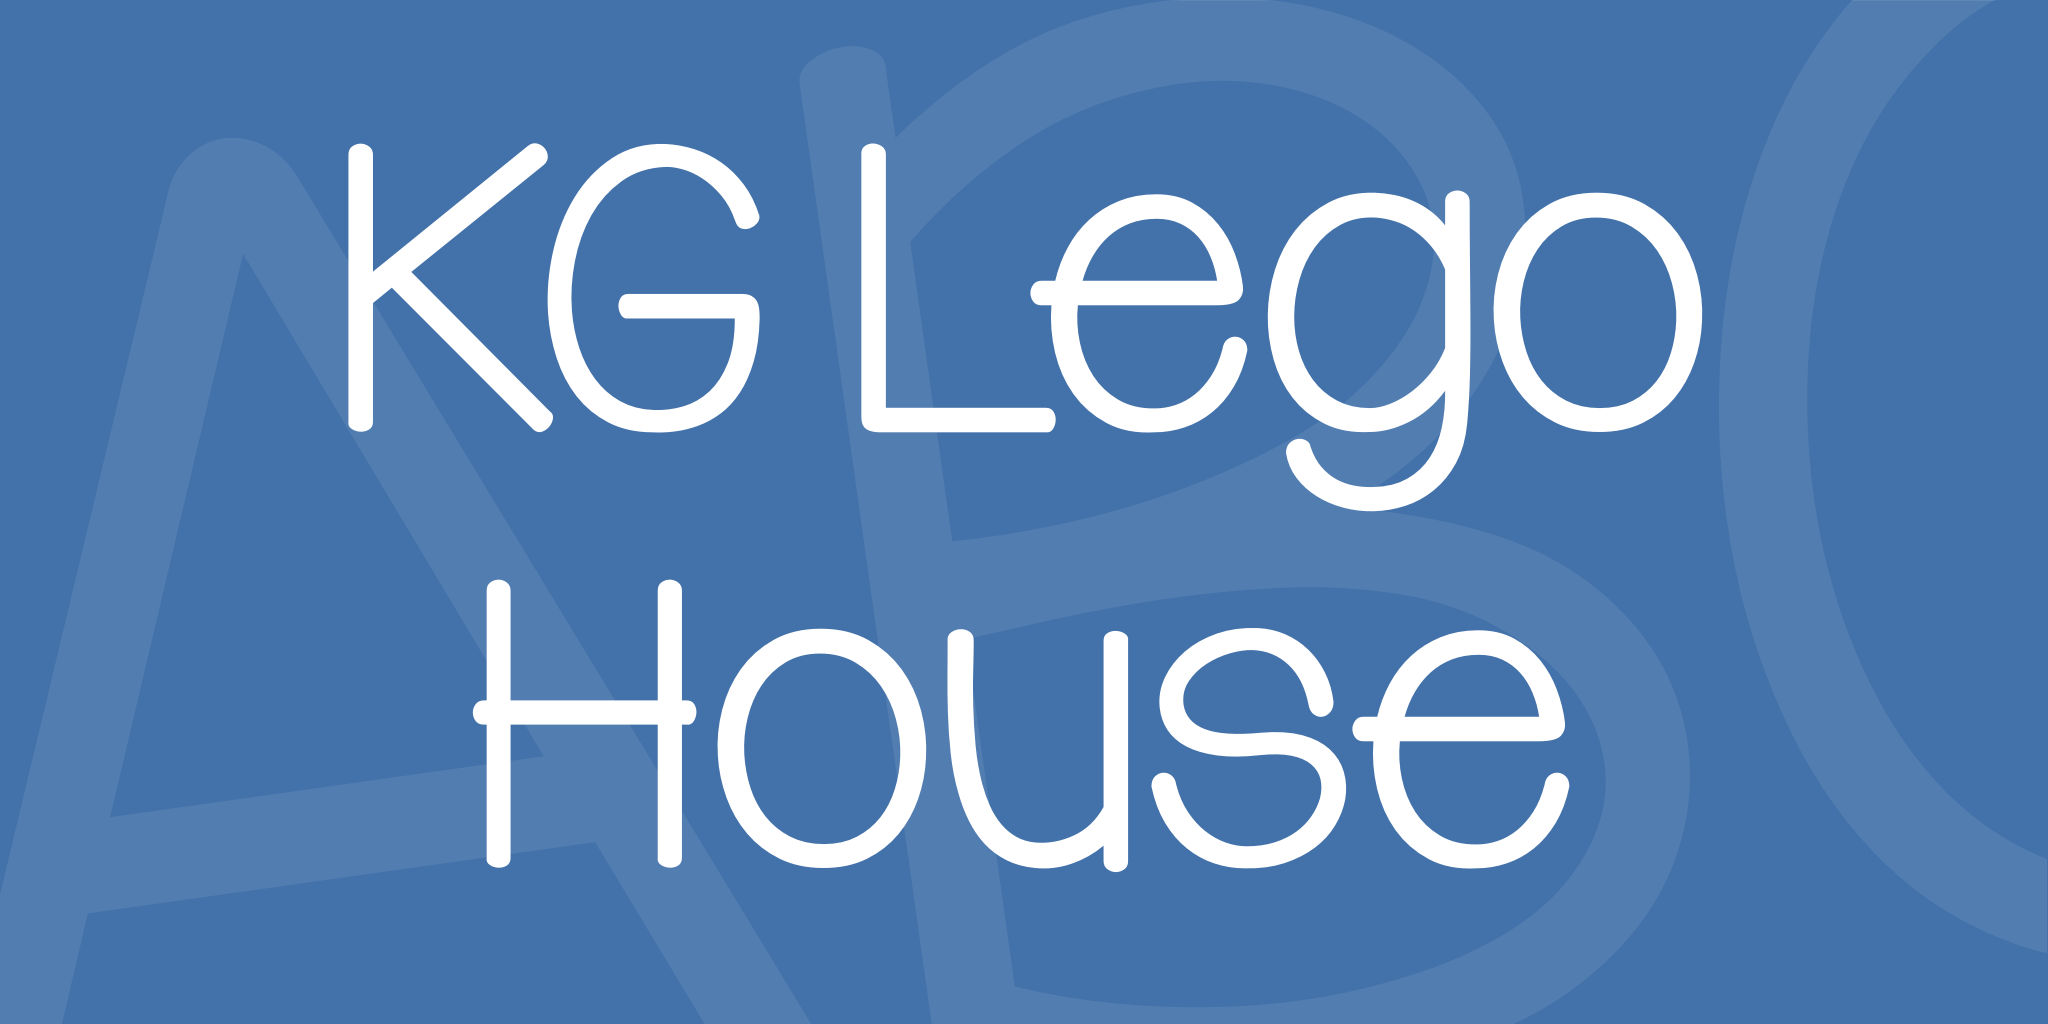 Kg Lego House Font Free Download Similar Fonts Fontget